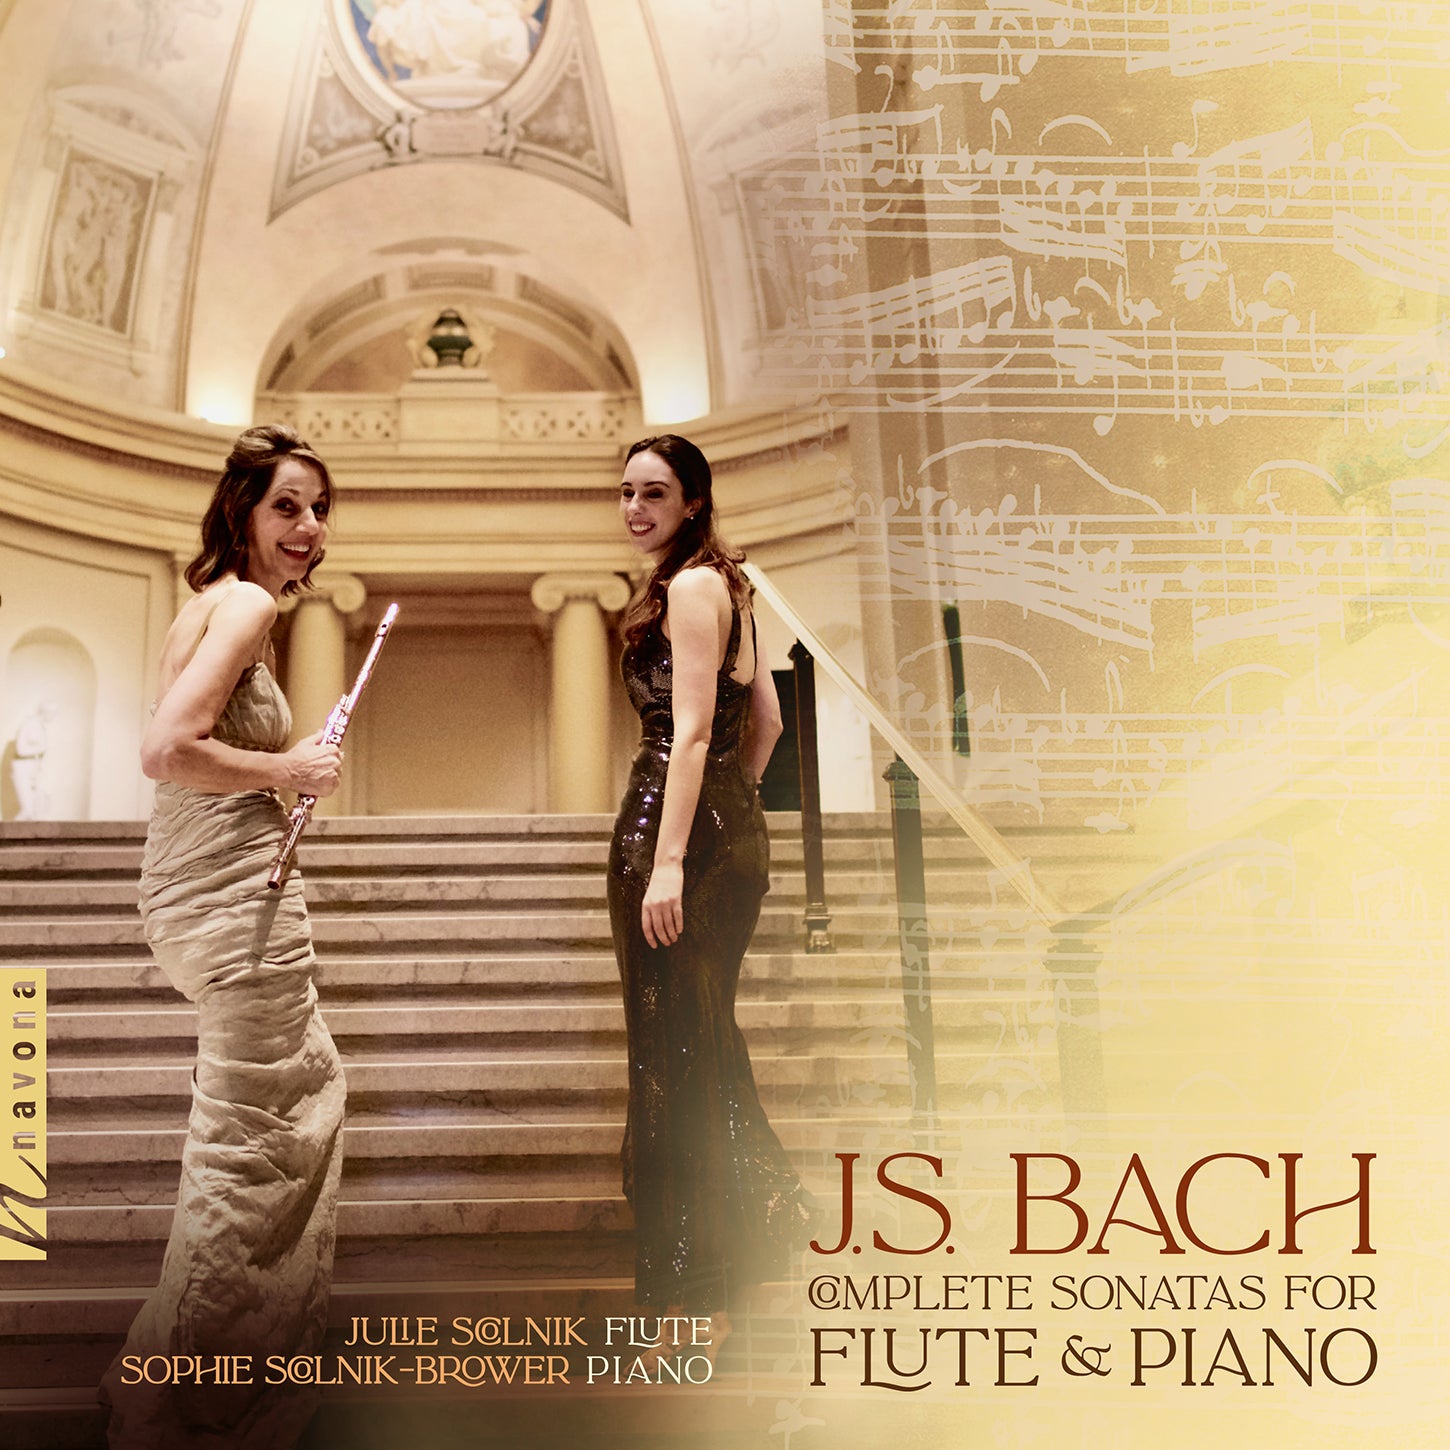 J.S. Bach: Complete Sonatas for Flute & Piano / Scolnik, Scolnik-Brower